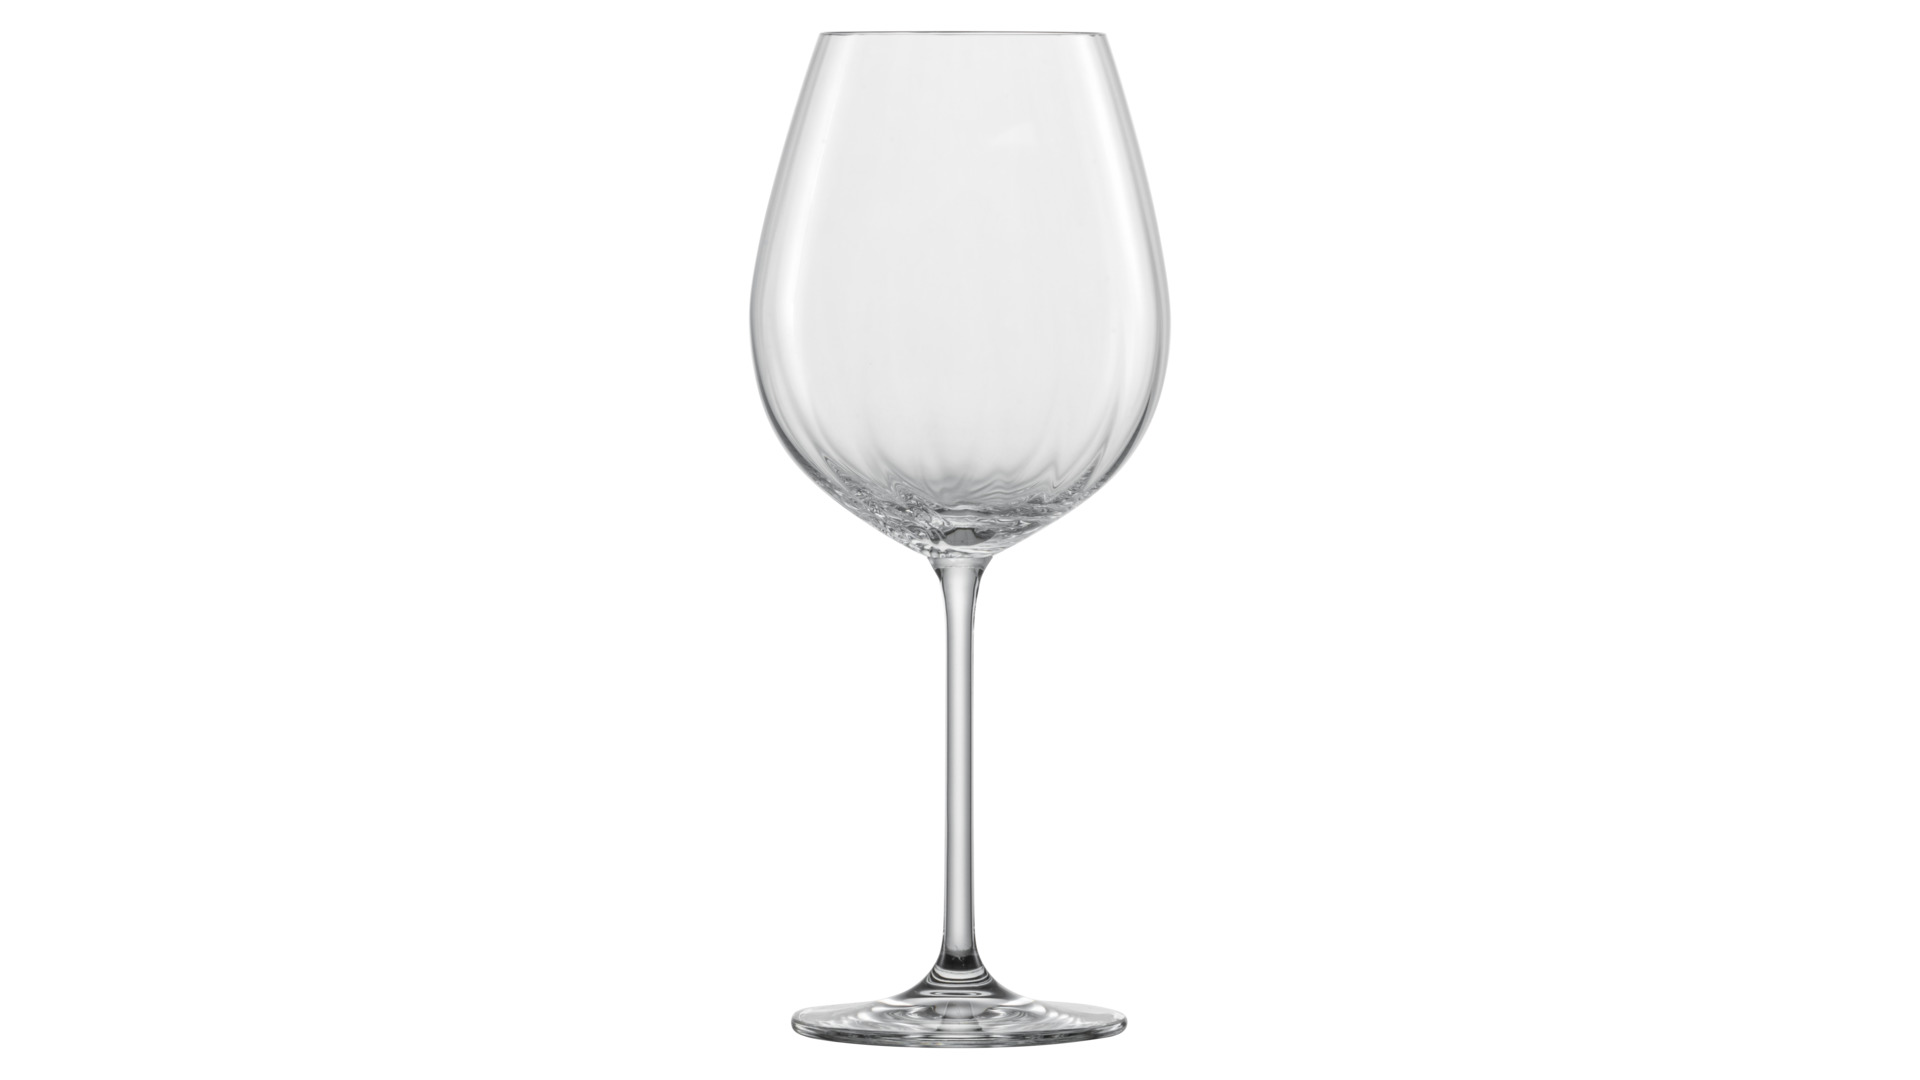 Набор бокалов для красного вина Zwiesel Glas Prizma 613 мл, 2 шт, стекло